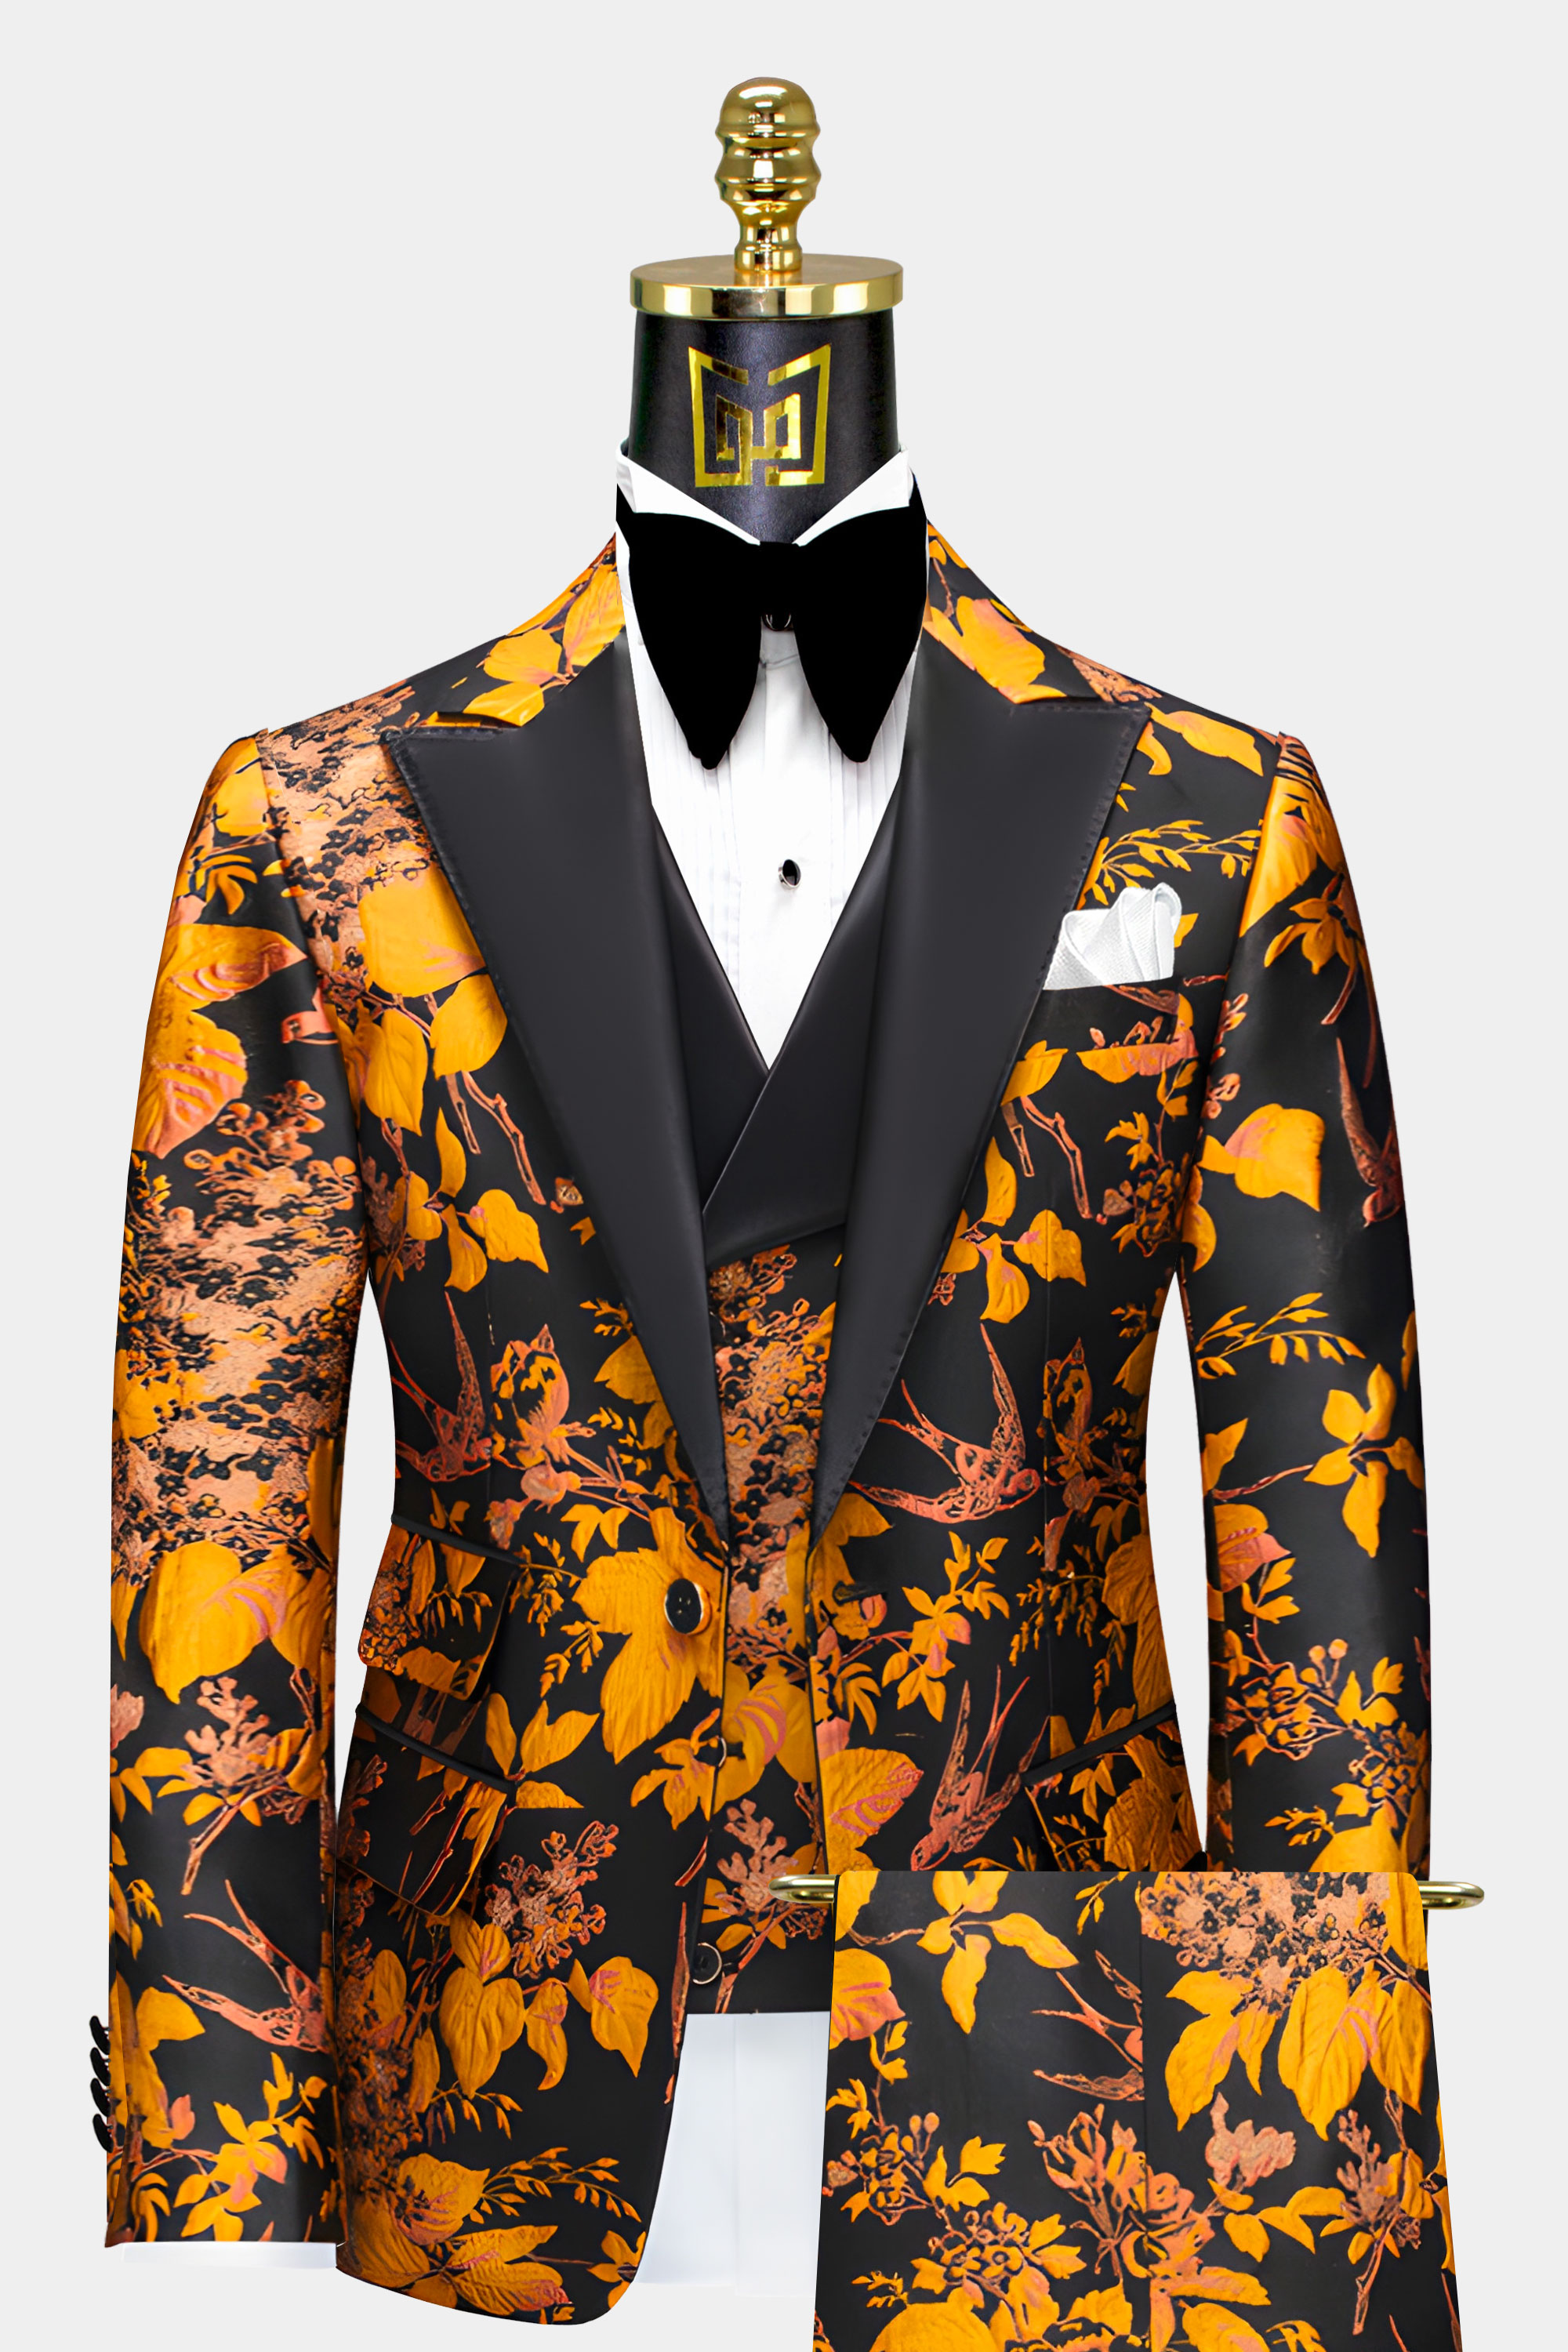 Marigold-and-Black-Tuxedo-Prom-Groom-Wedding-Suit-from-Gentlemansguru.com